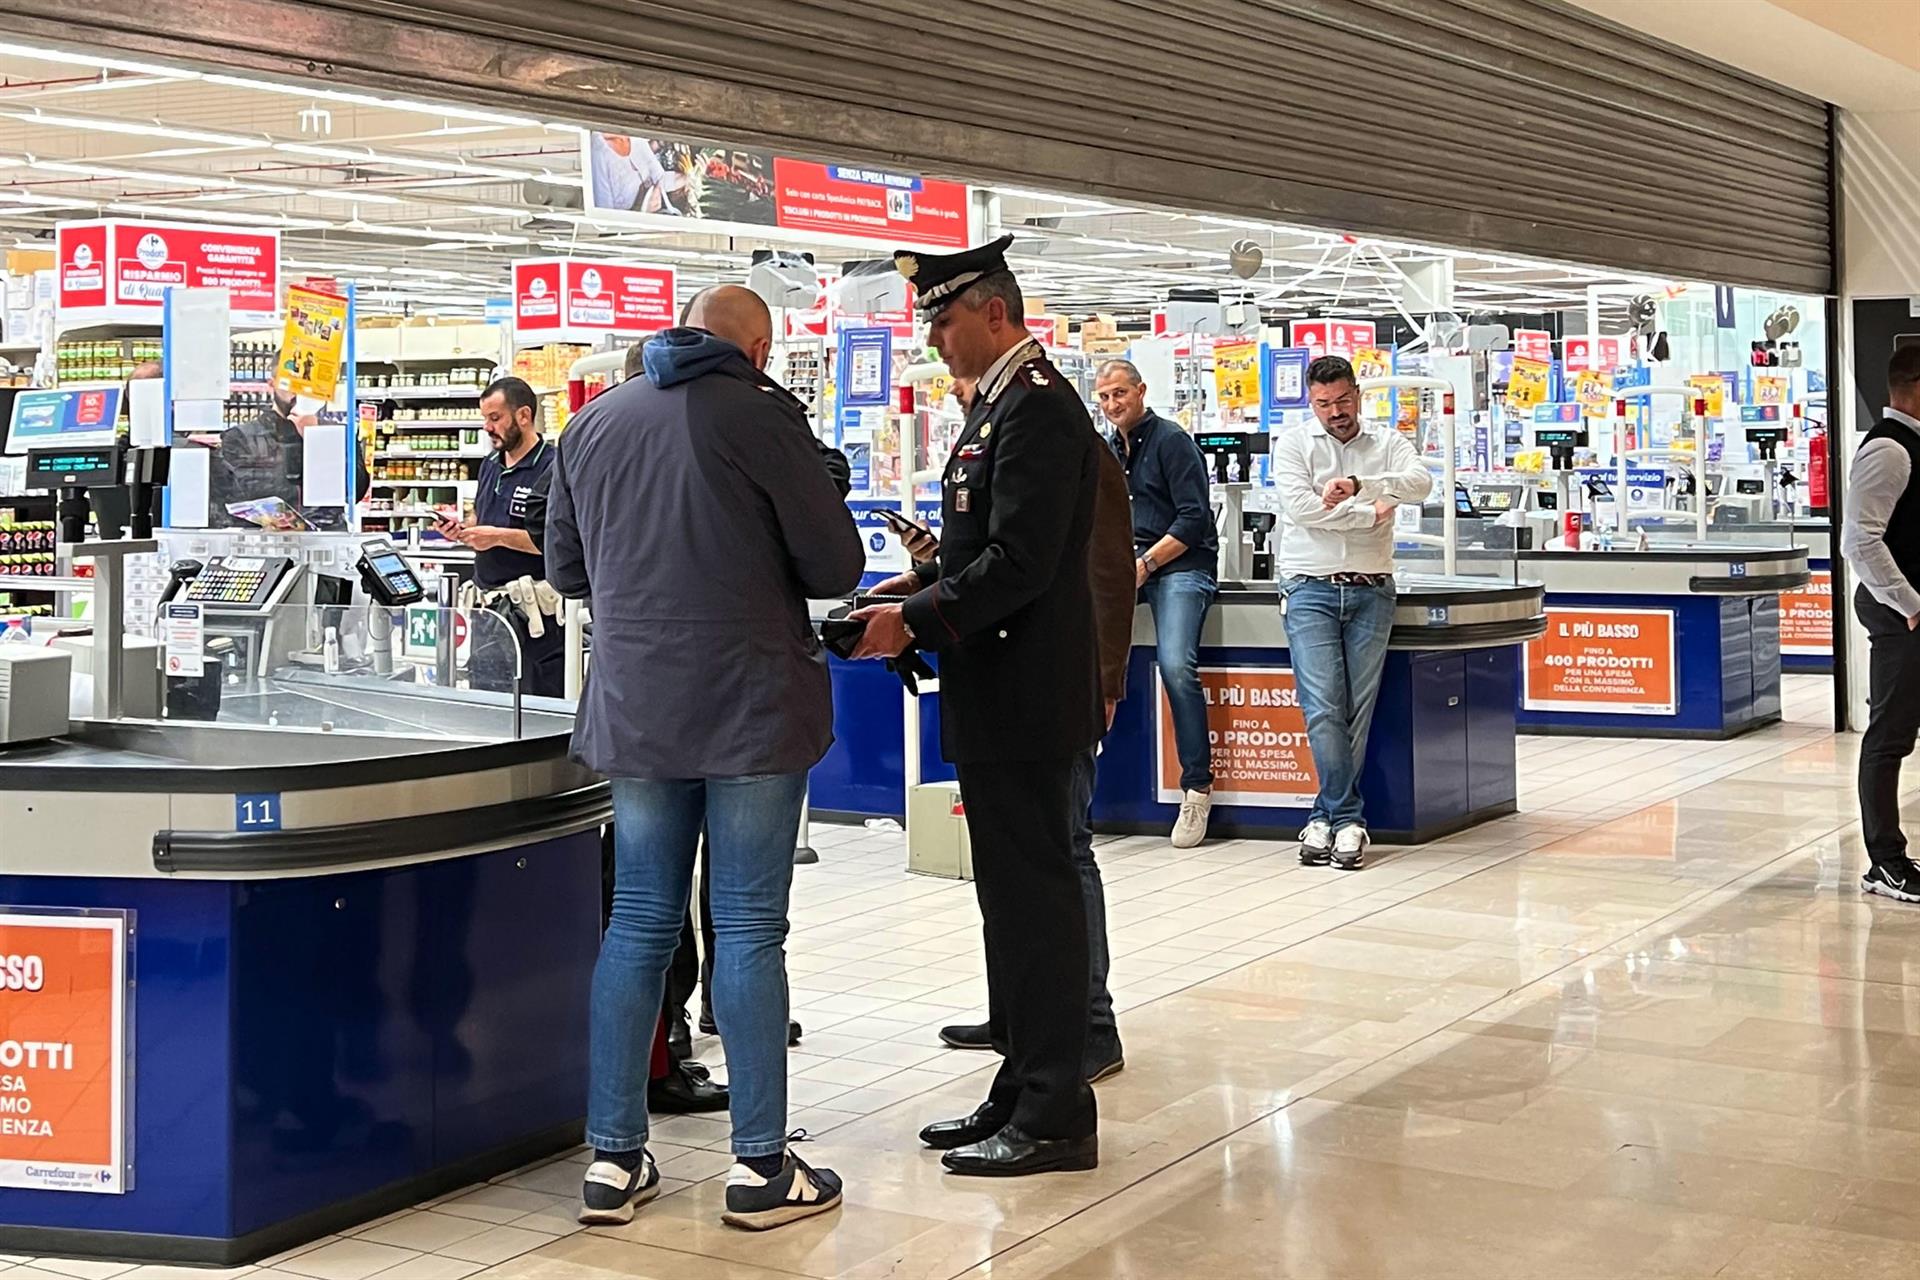 La Policía inspecciona el lugar de los hechos tras la agresión, en un supermercado de Assago, cerca de Milán. EFE/EPA/Sergio Pontoriero